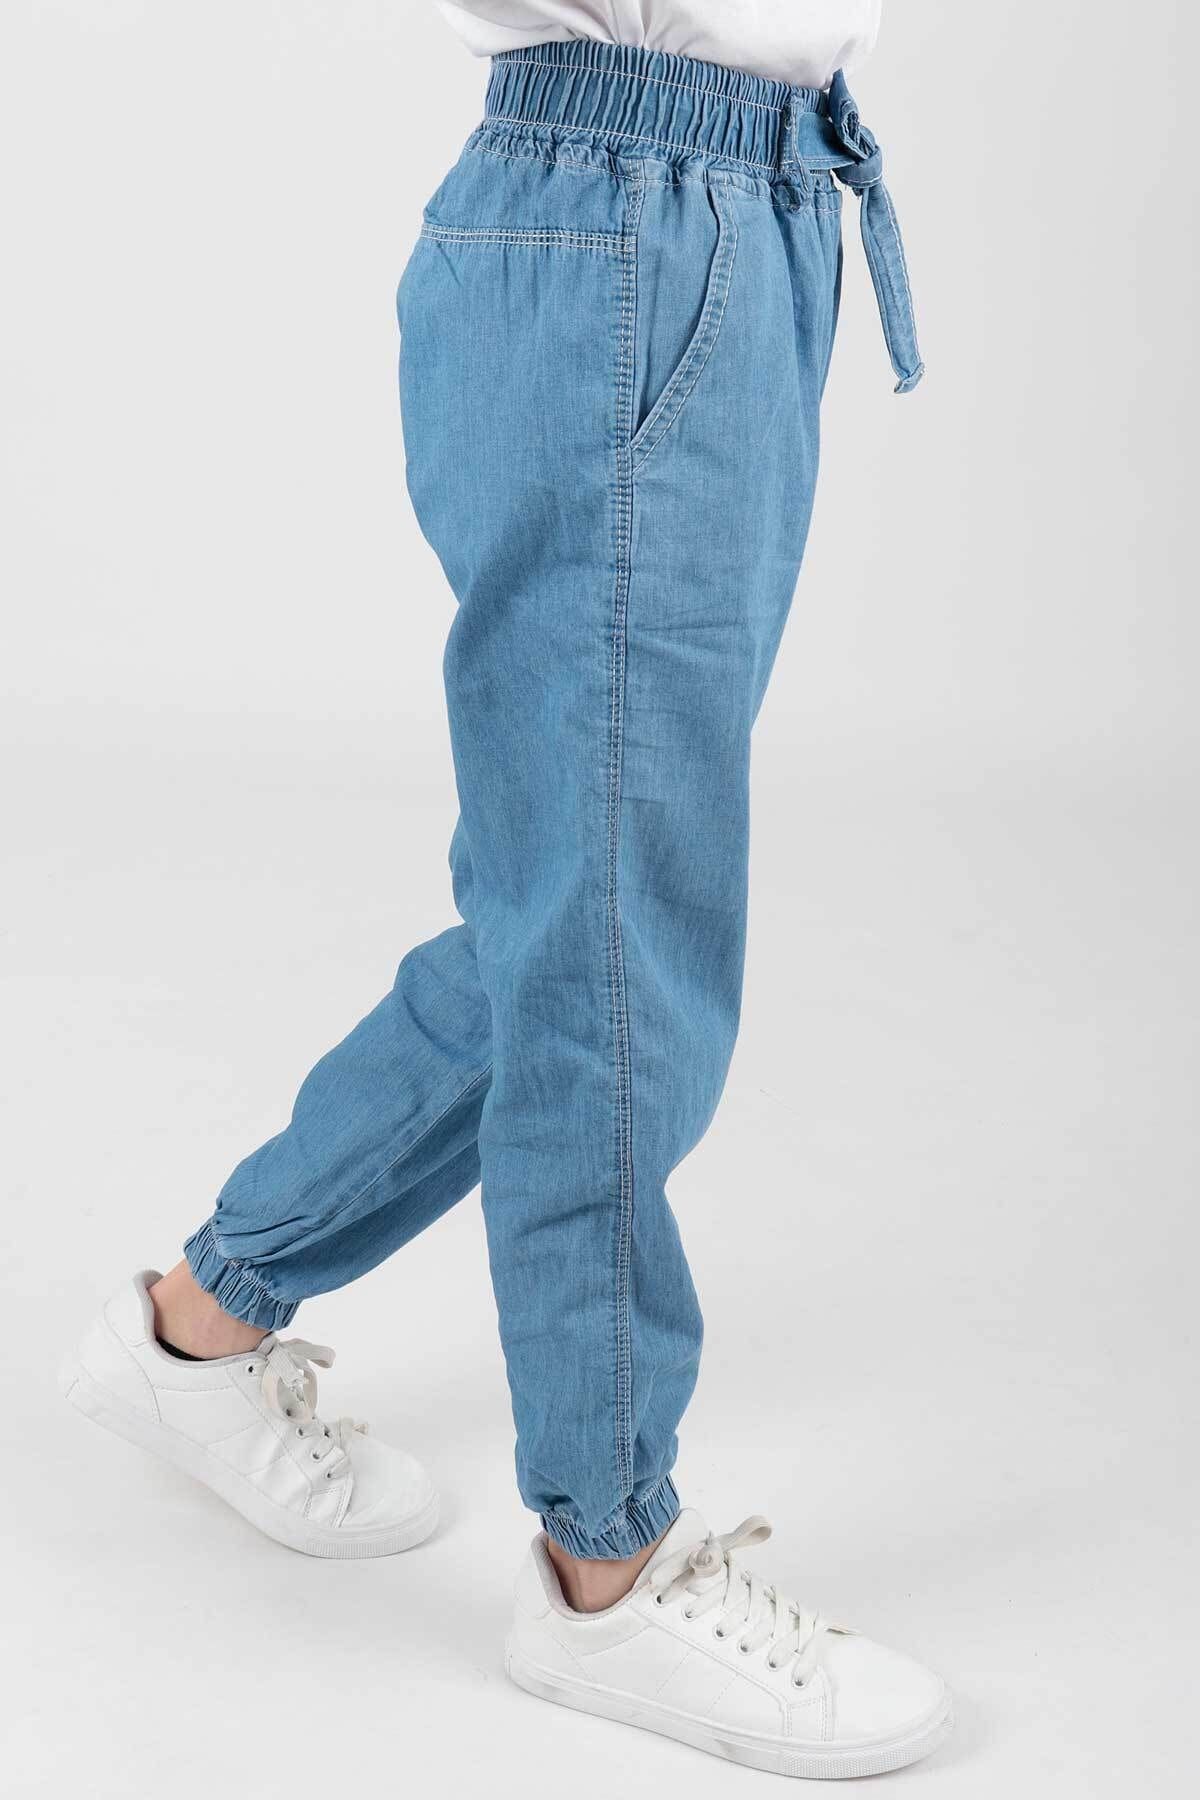 AHENGİM Kız Çocuk Lastik Paçalı Trend Pantolon Ak2389